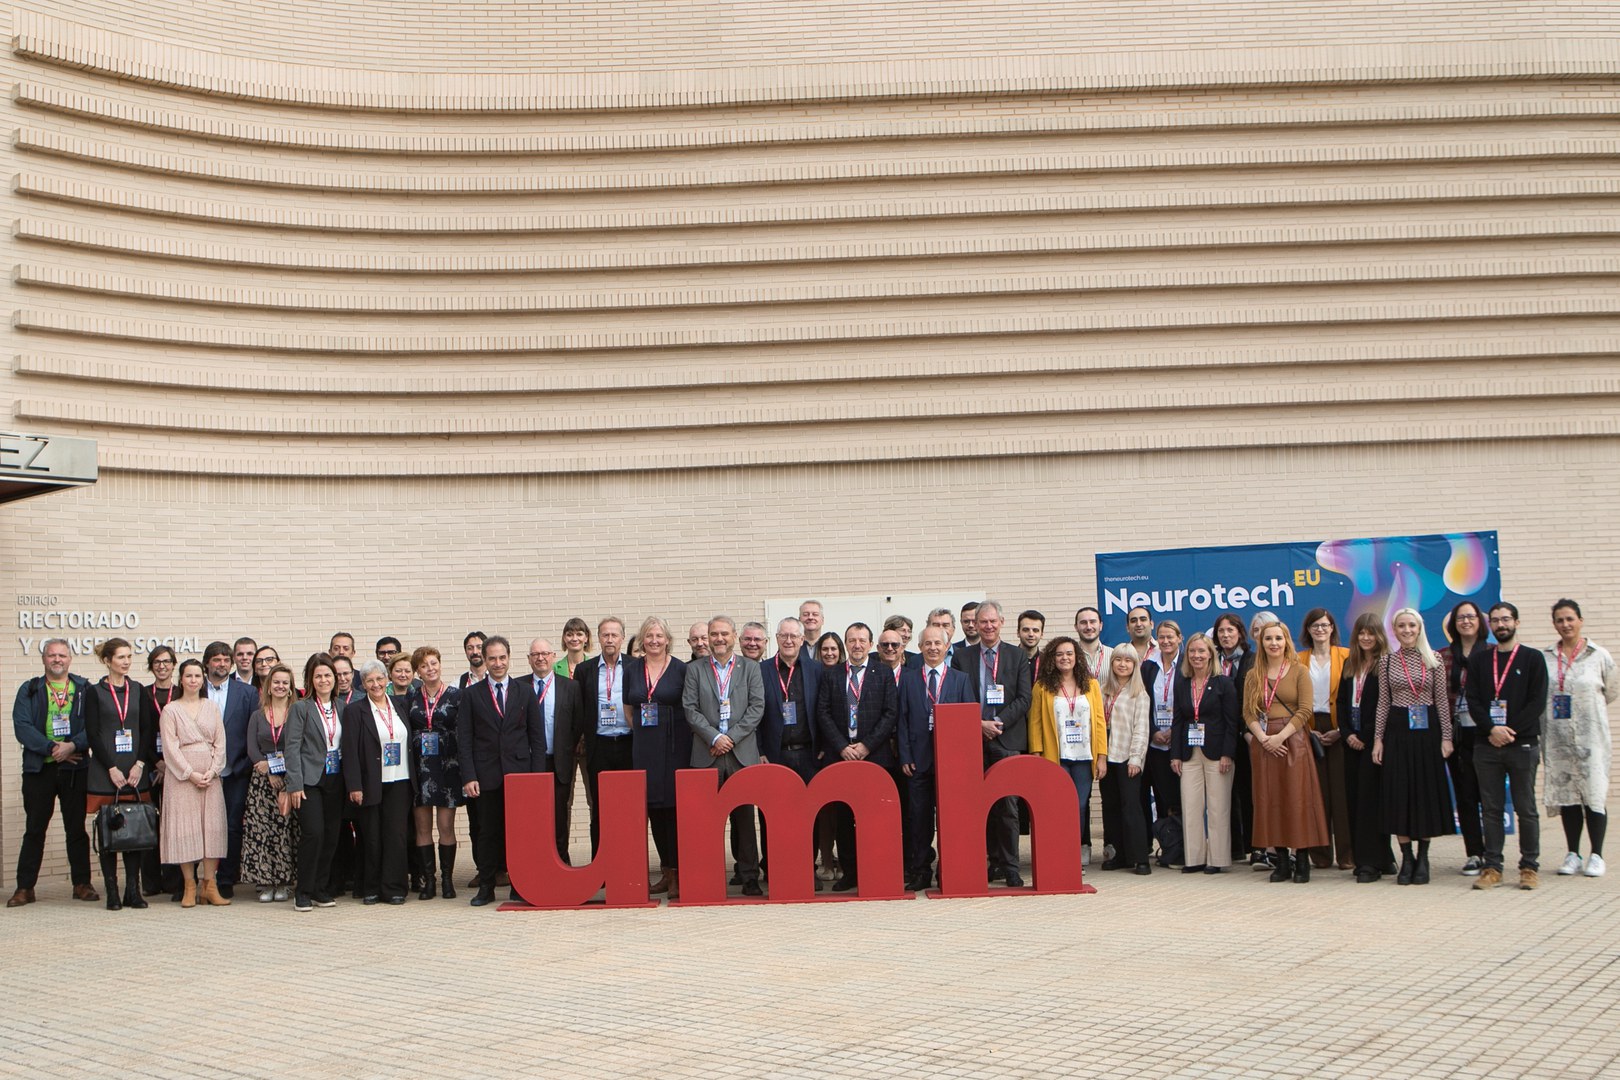 Die Teilnehmerinnen und Teilnehmer des Treffens vor einem Gebäude der Universitas Miguel Hernández in Alicante.